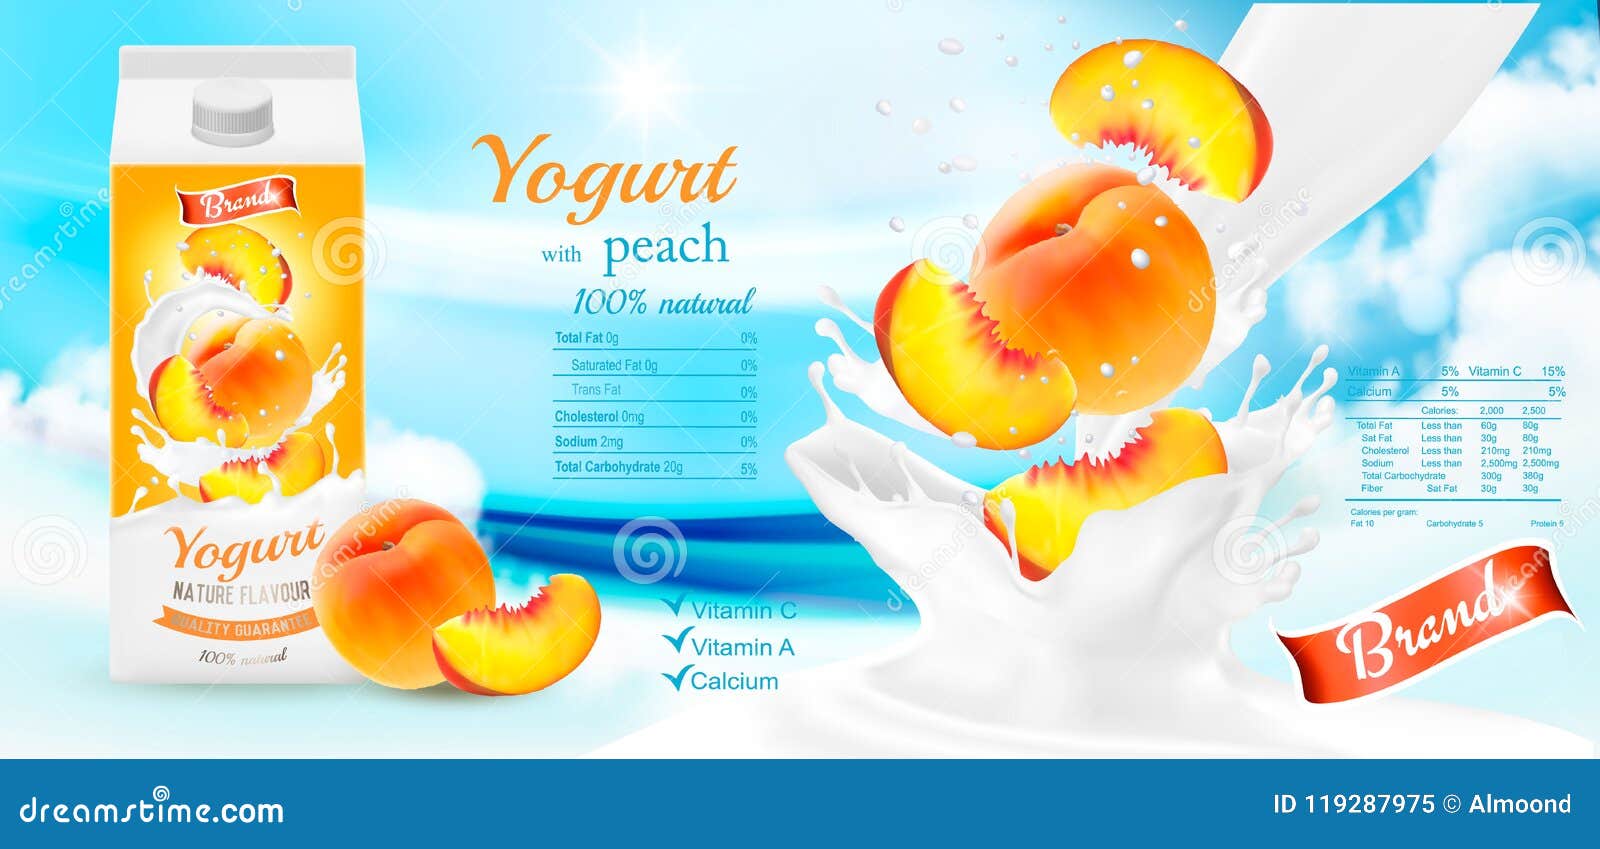 fruit yogurt with berries advert concept.